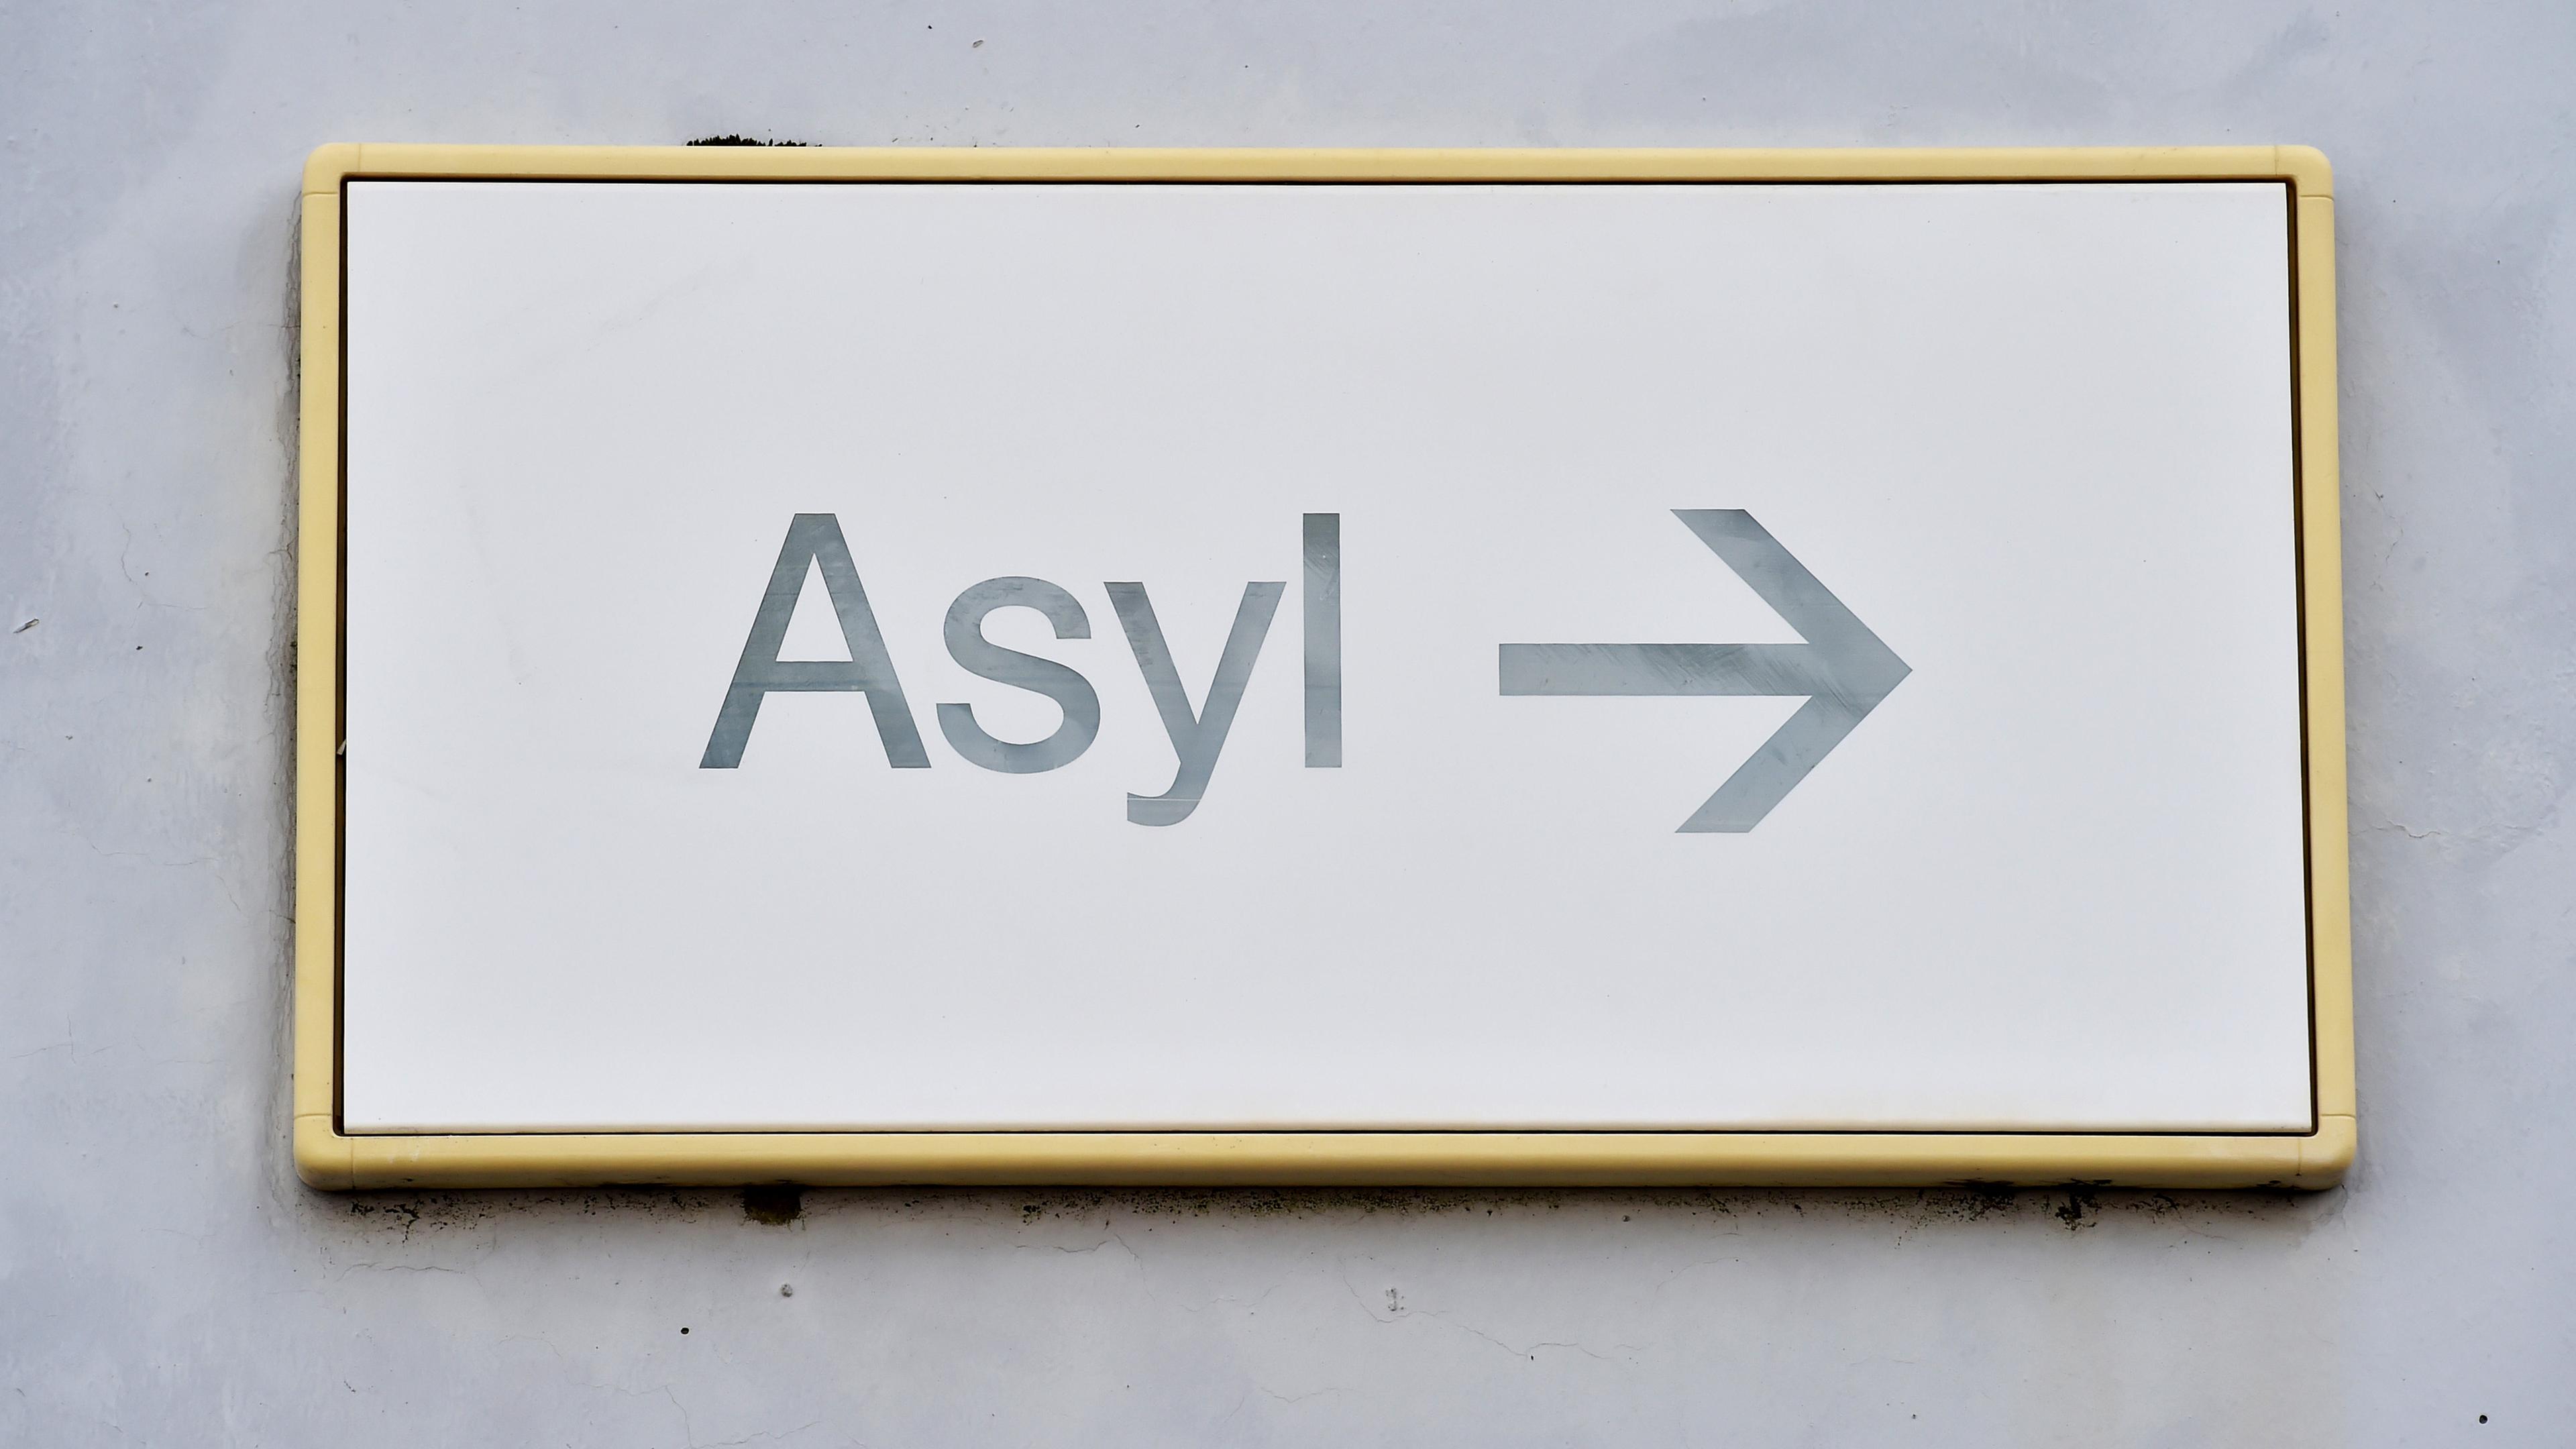 Ein Schild mit der Aufschrift «Asyl» hängt in der Landeserstaufnahme für Asylbewerber (LEA) an einer Wand.